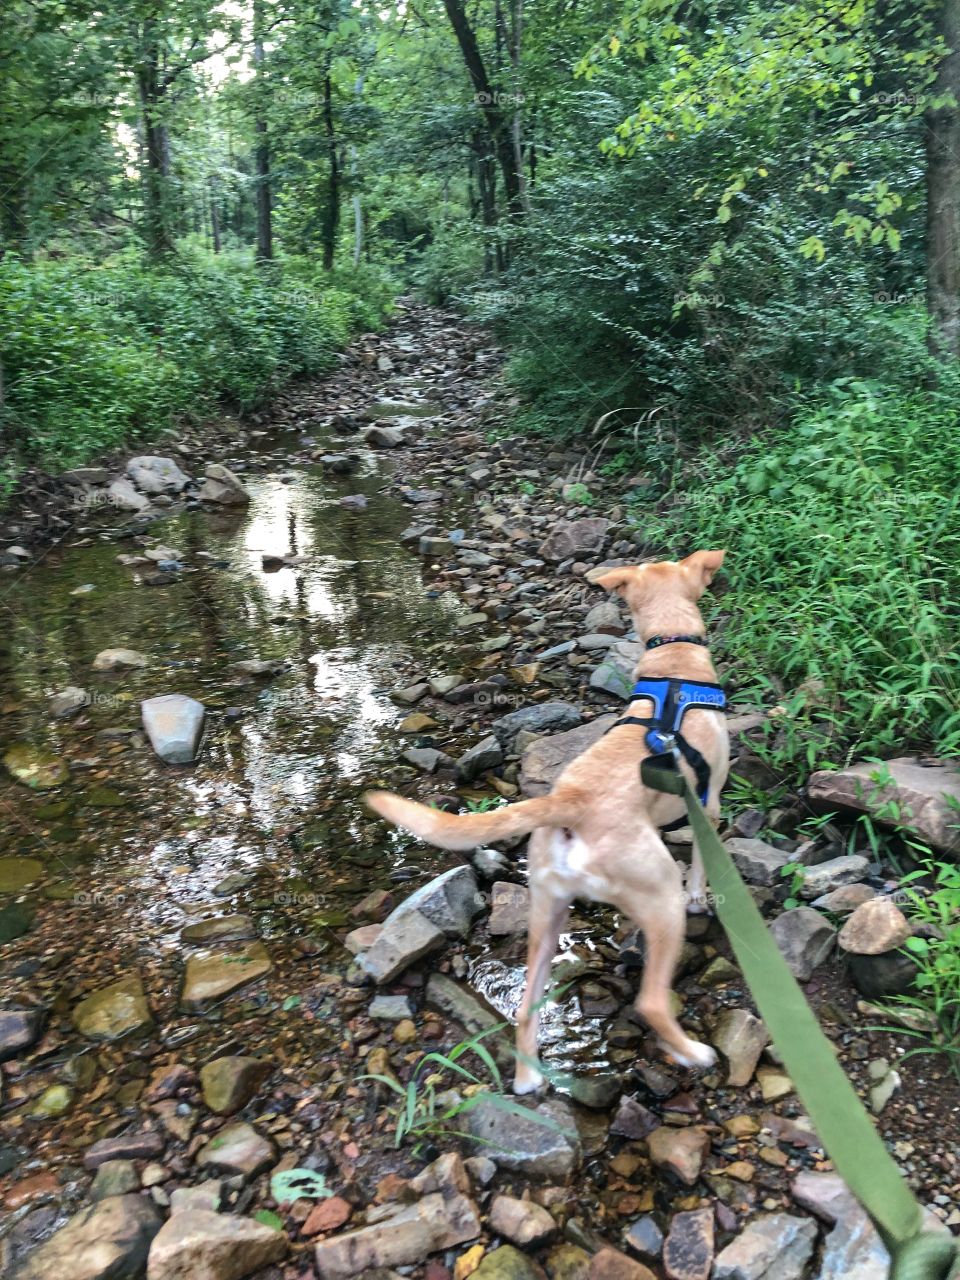 Rompin in the creek 